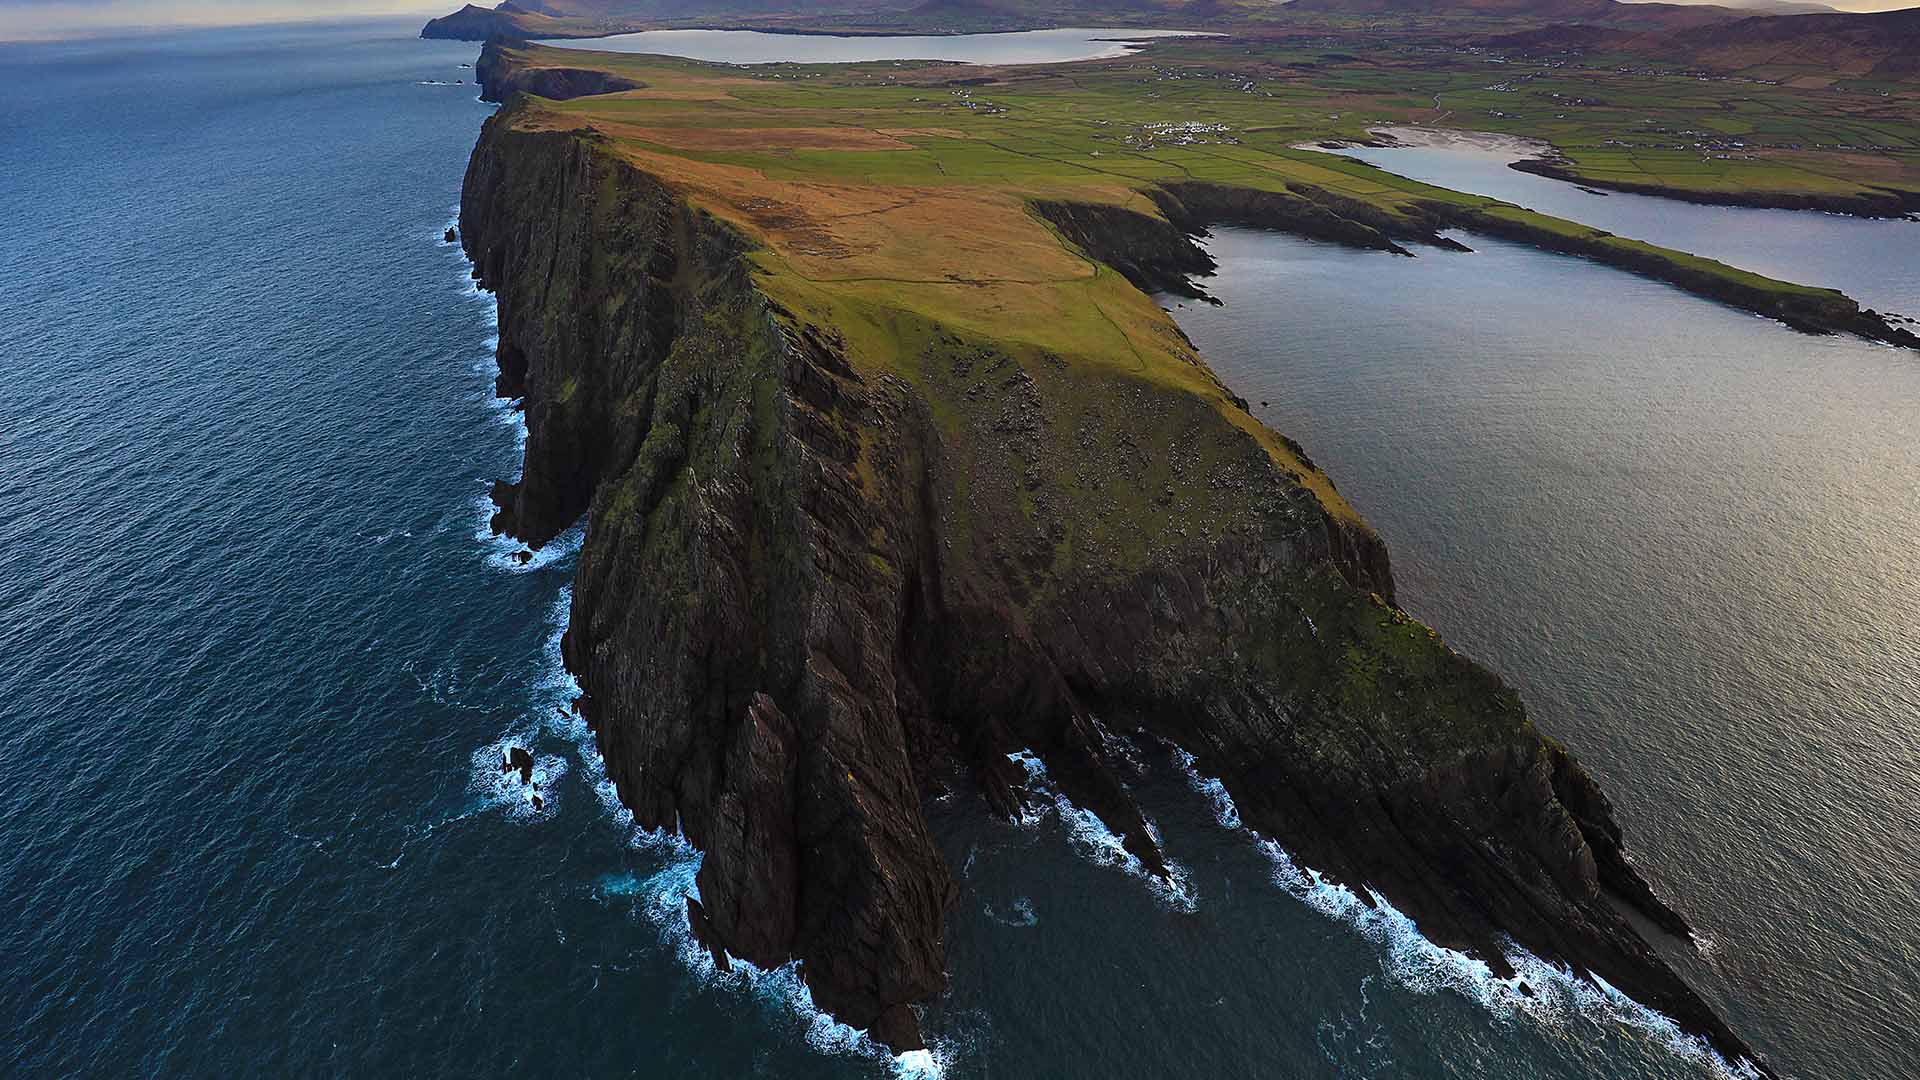 Ceann Sibeal, Dingle Peninsula, Co. Kerry ©Valerie O’Sullivan - Fáilte Ireland